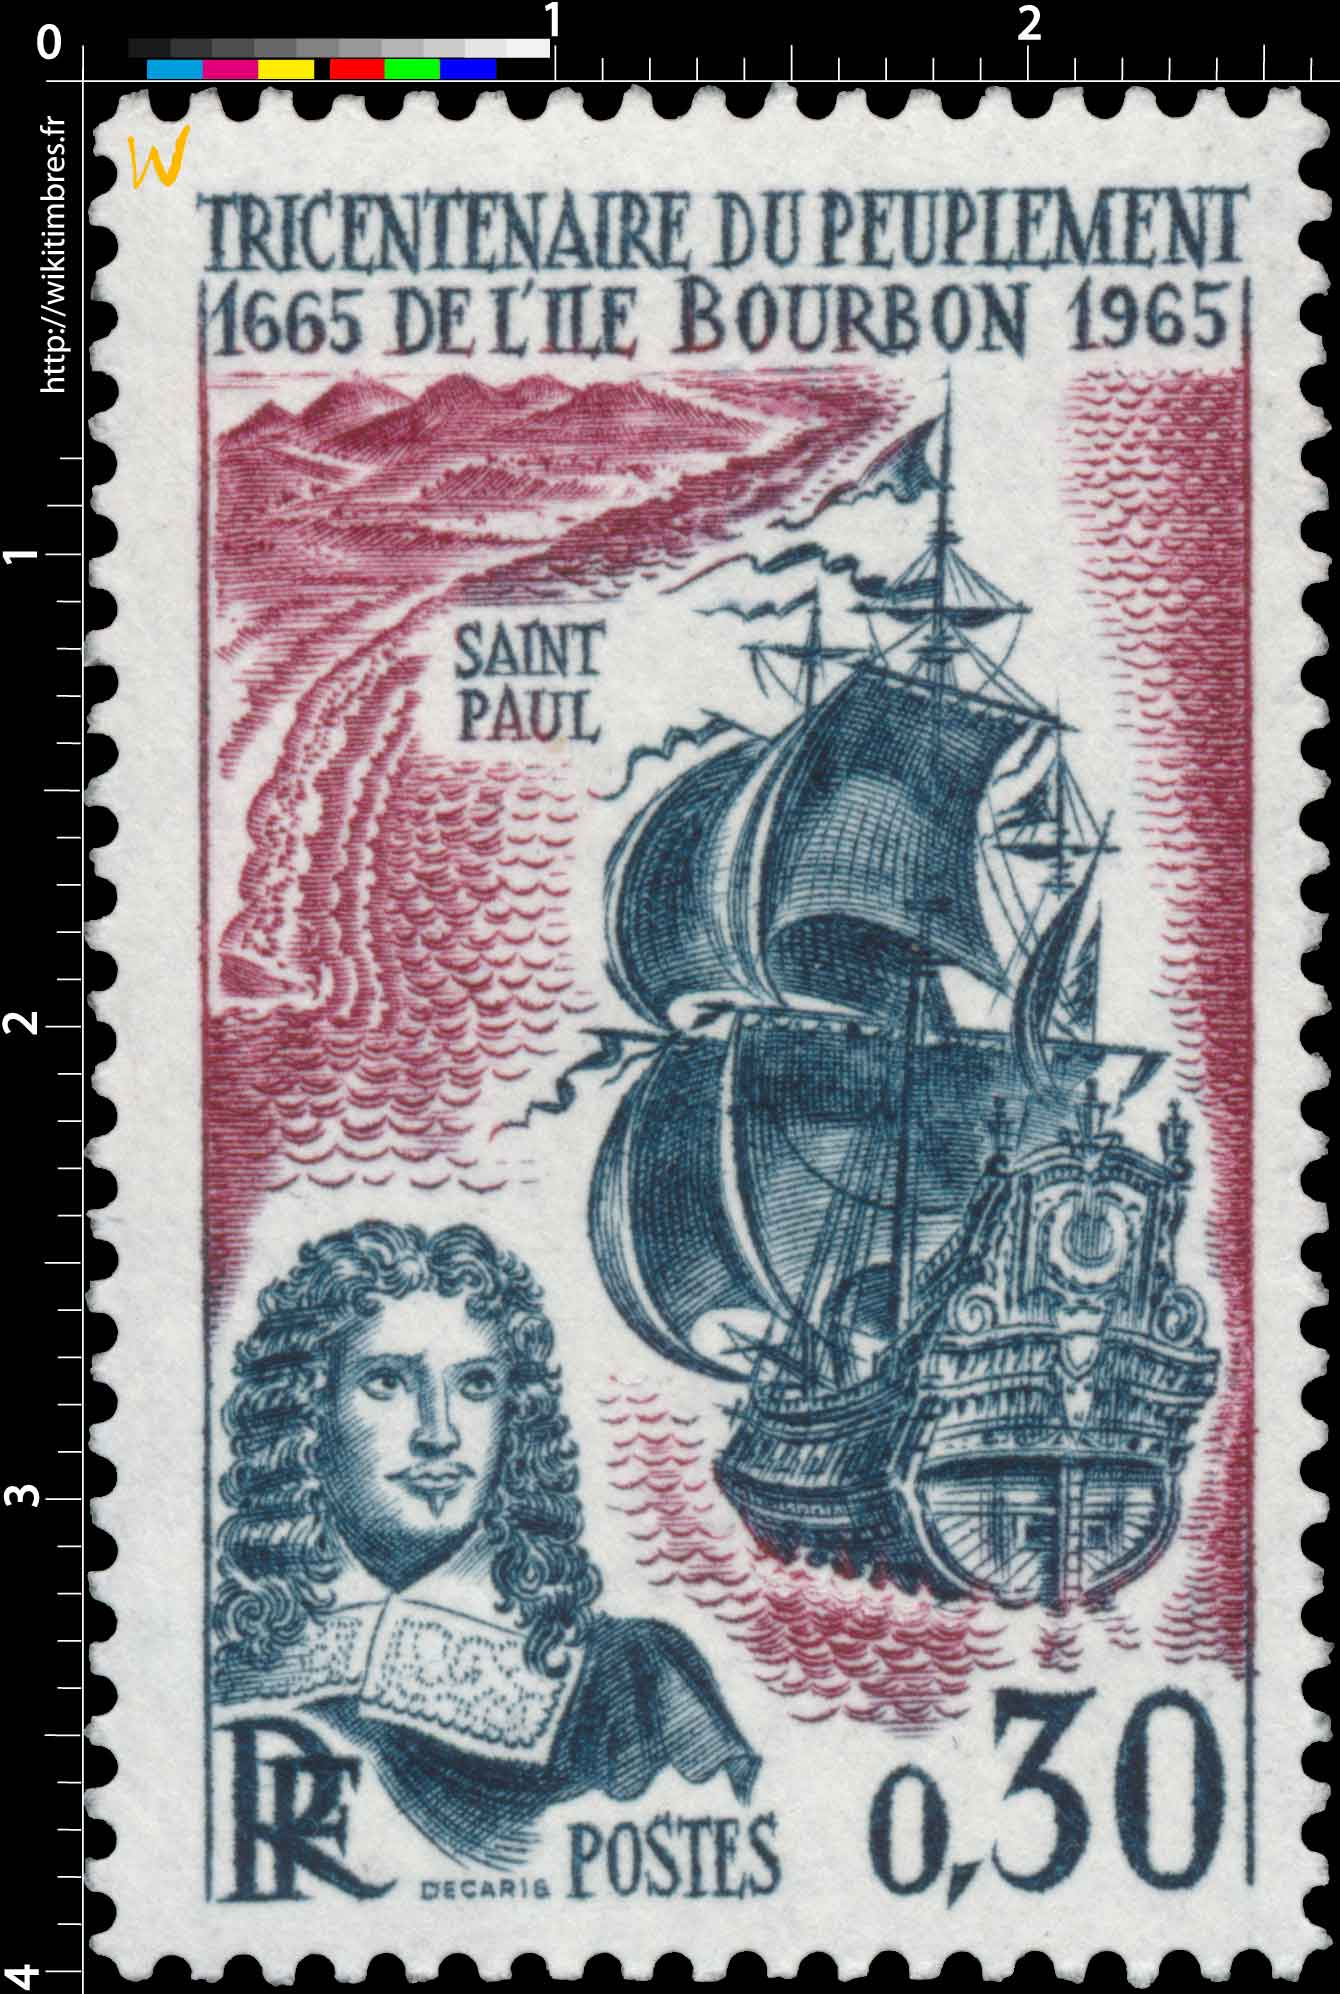 TRICENTENAIRE DU PEUPLEMENT DE L'ÎLE BOURBON 1665-1965